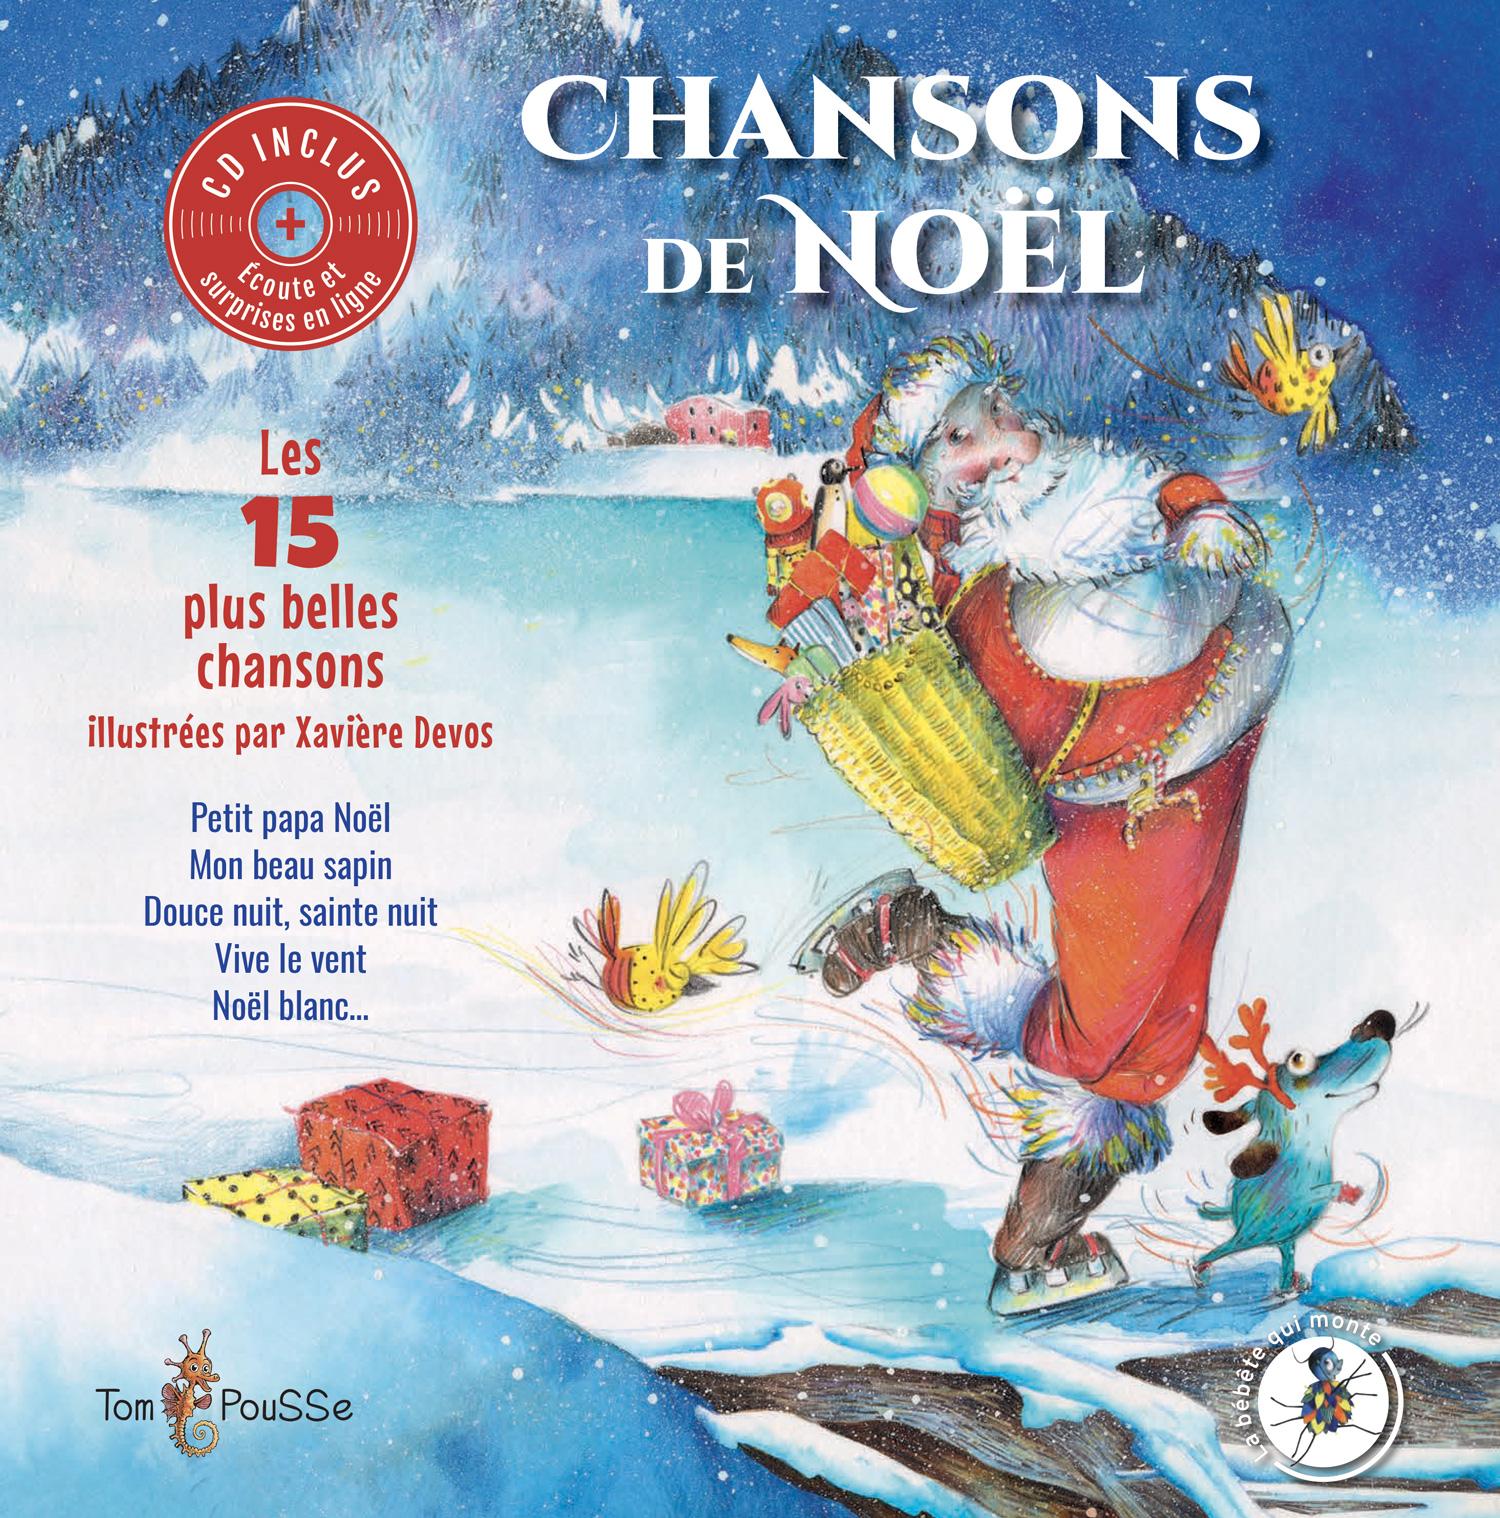 Les plus belles chansons de Noël (1 heure ) ⒹⒺⓋⒶ Chansons de Noël 